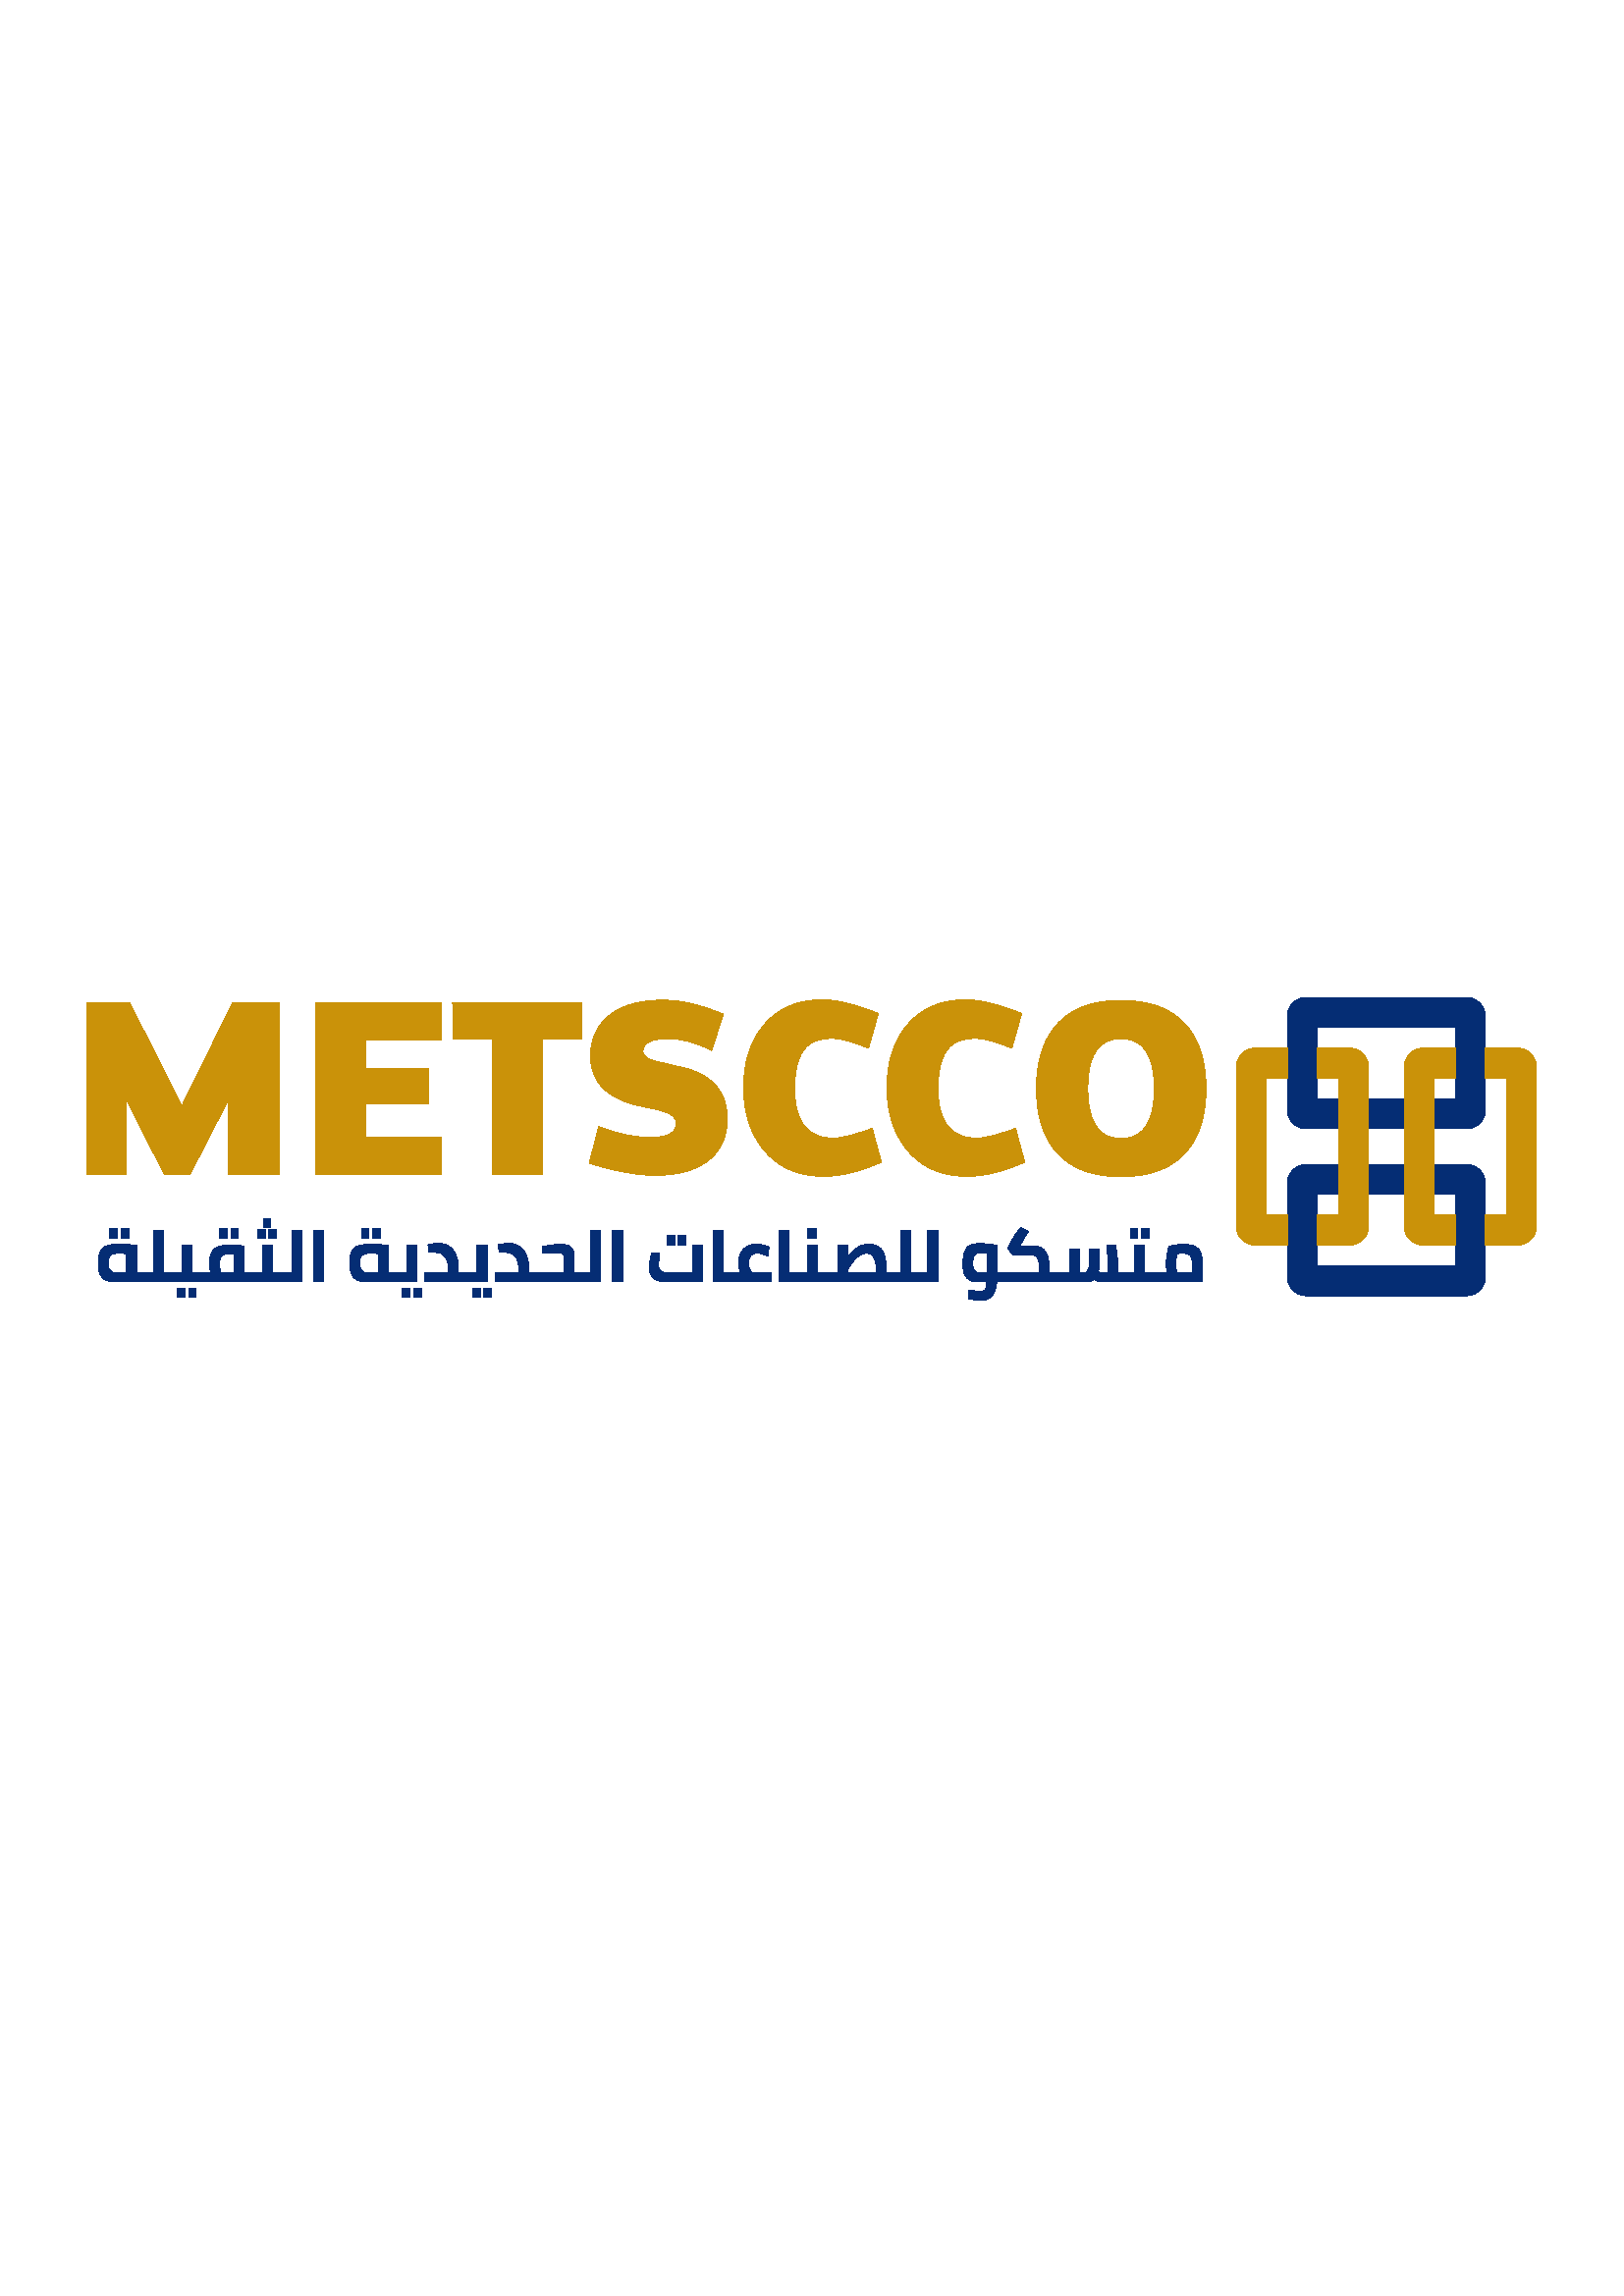 METSCCO Heavy Steel Industries Co. Ltd.